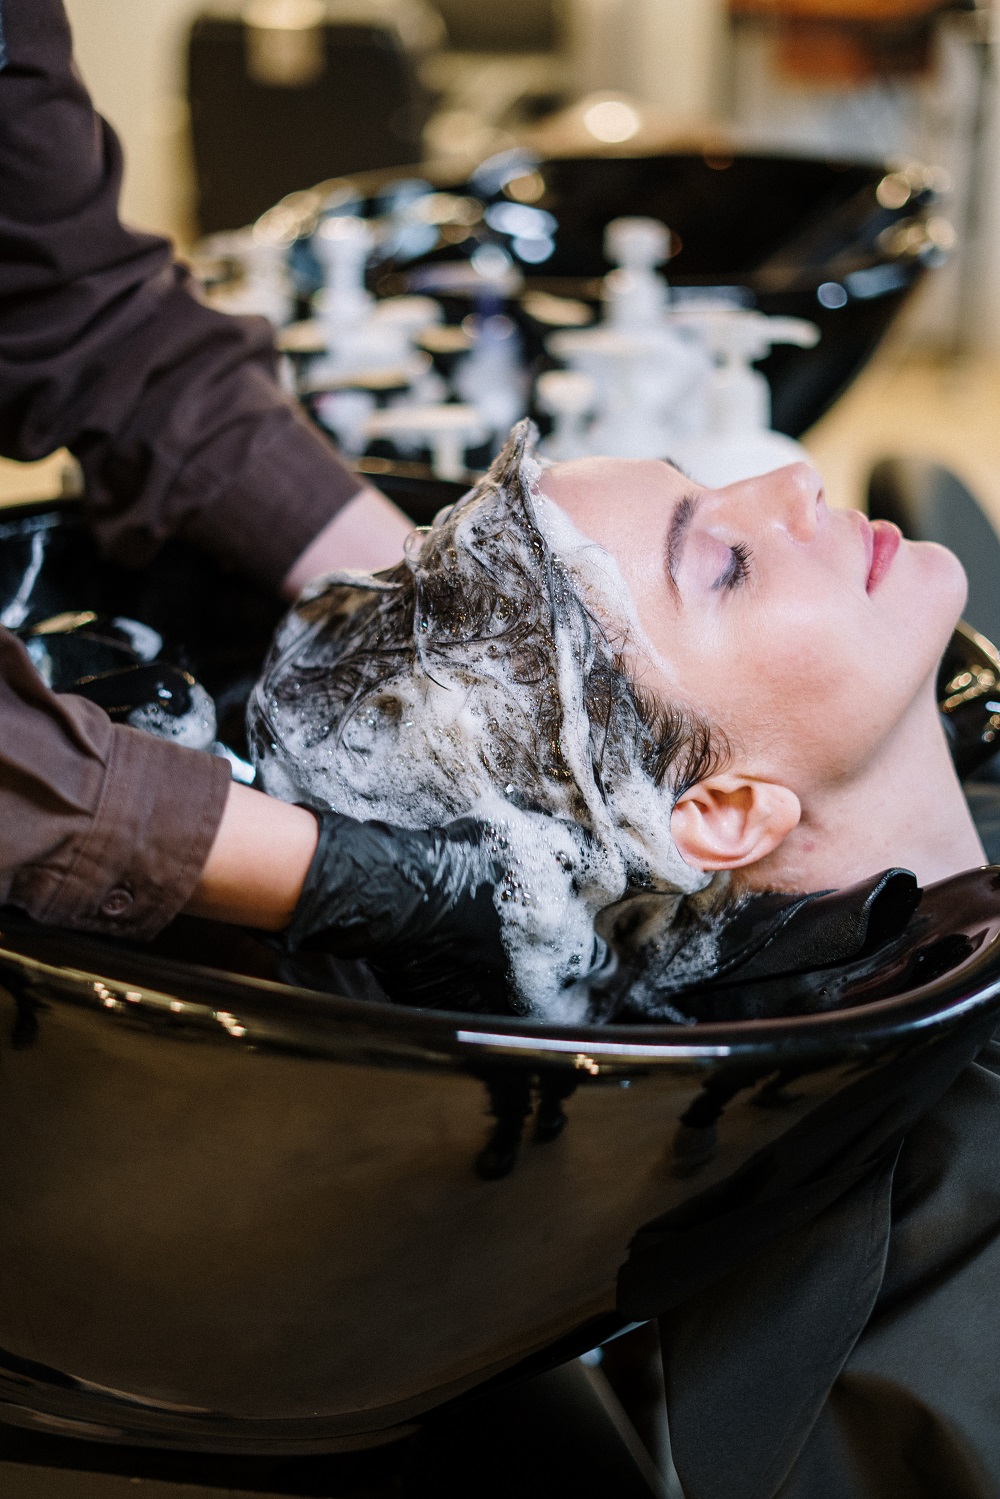 Resultados de hairceuticals podem ser melhores que tratamentos de salão. (Foto: Reprodução/Pexels)